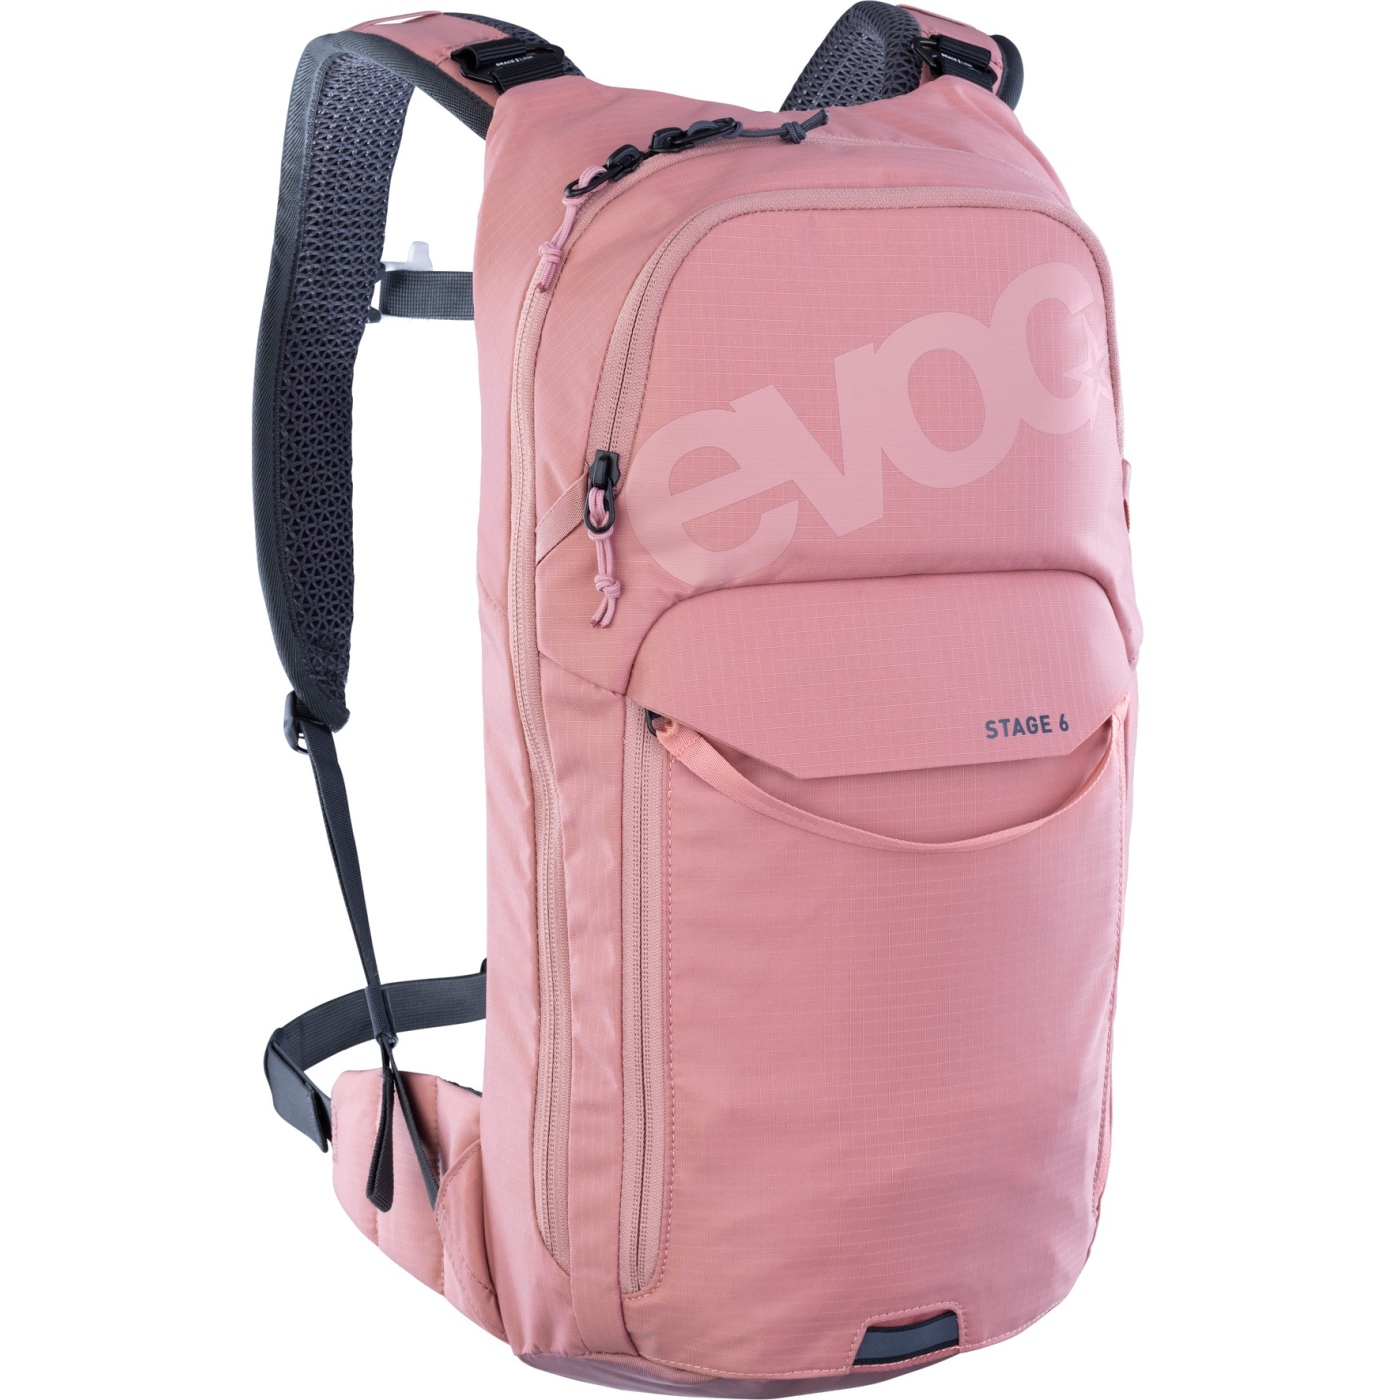 Produktbild von EVOC Stage Rucksack - 6 L - Dusty Pink